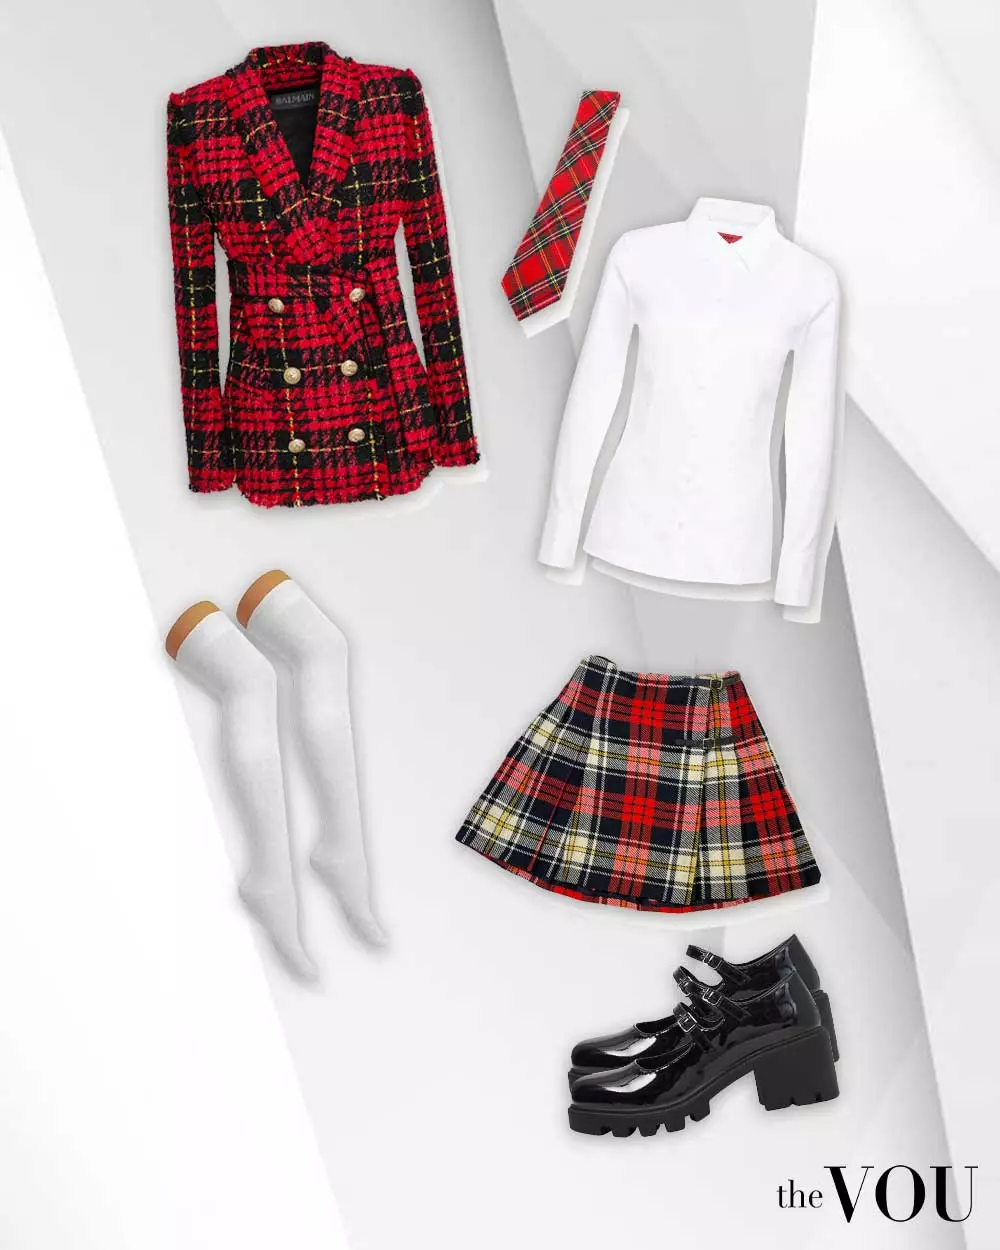 Edgy Preppy outfit: shoulder-padded plaid blazer, plaid skirt, shirt, plaid tie, knee-high socks